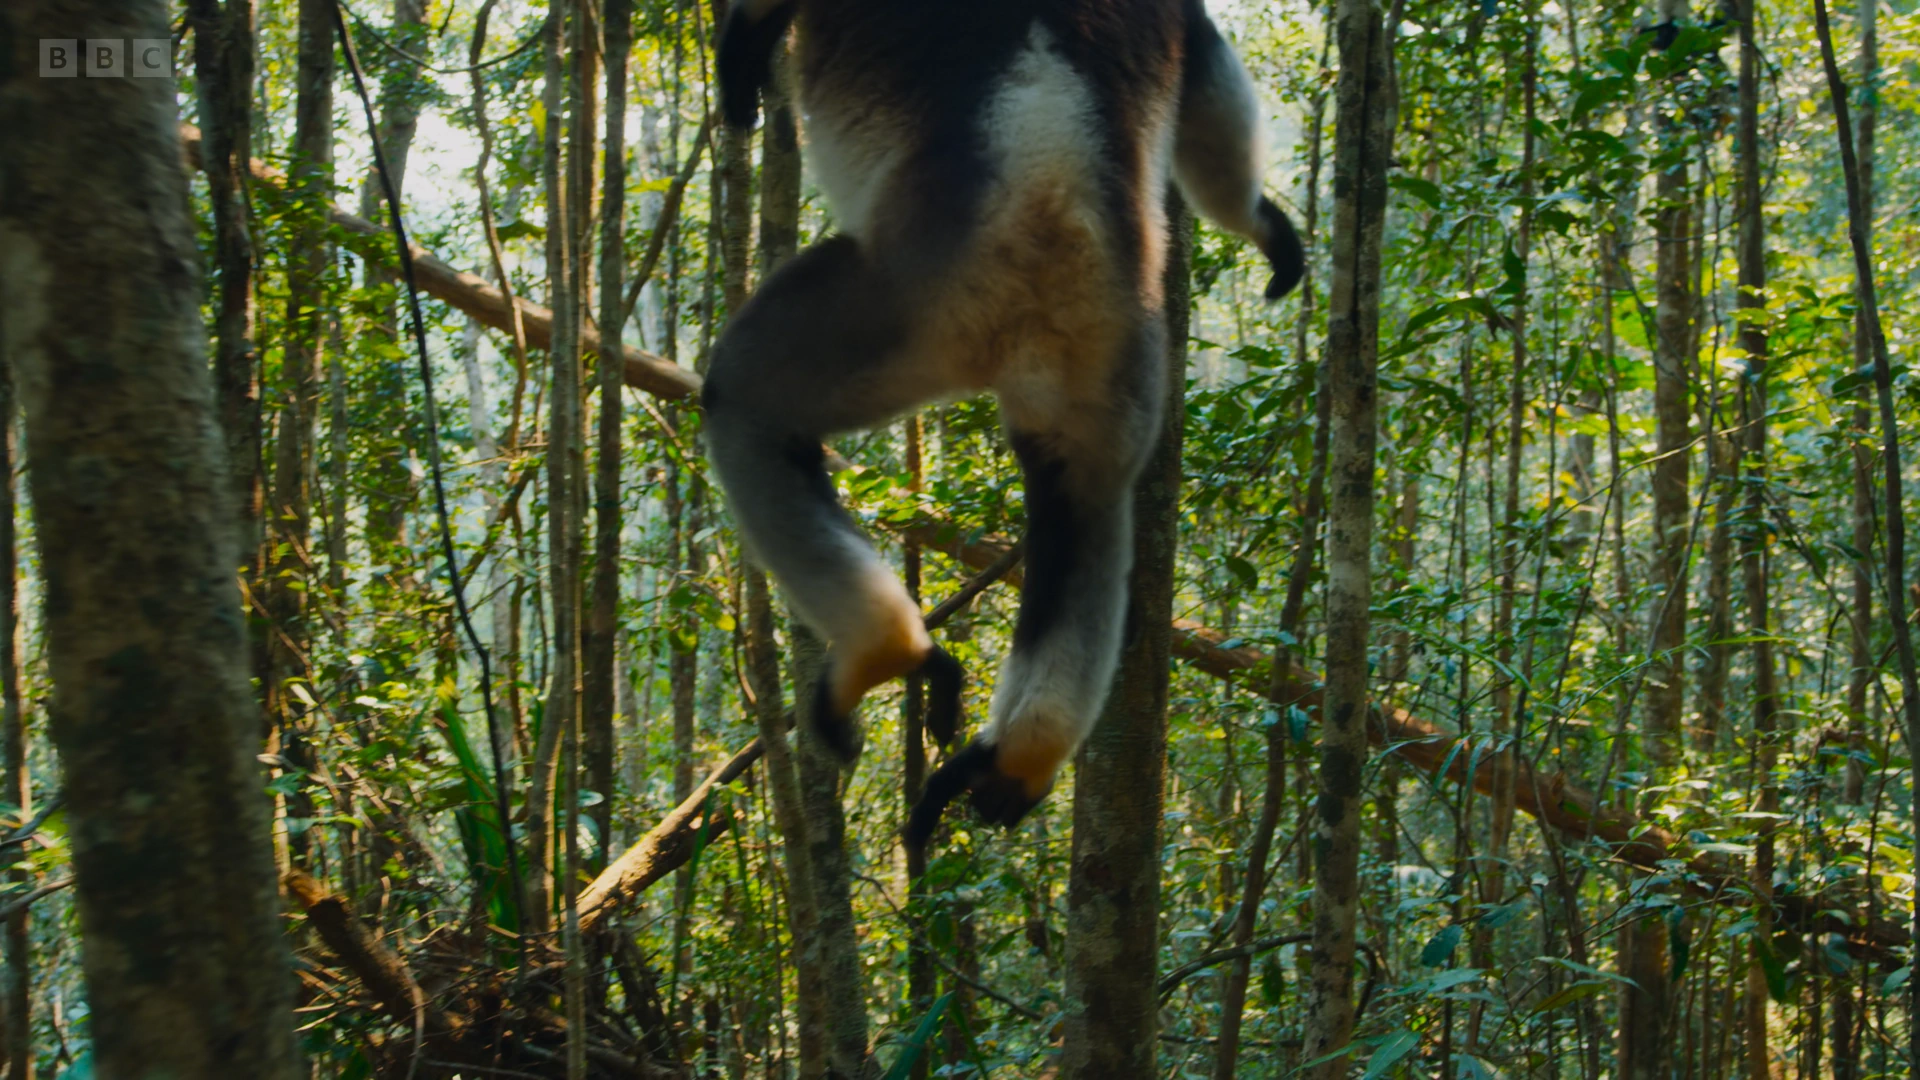 Indri (Indri indri) as shown in Planet Earth II - Jungles